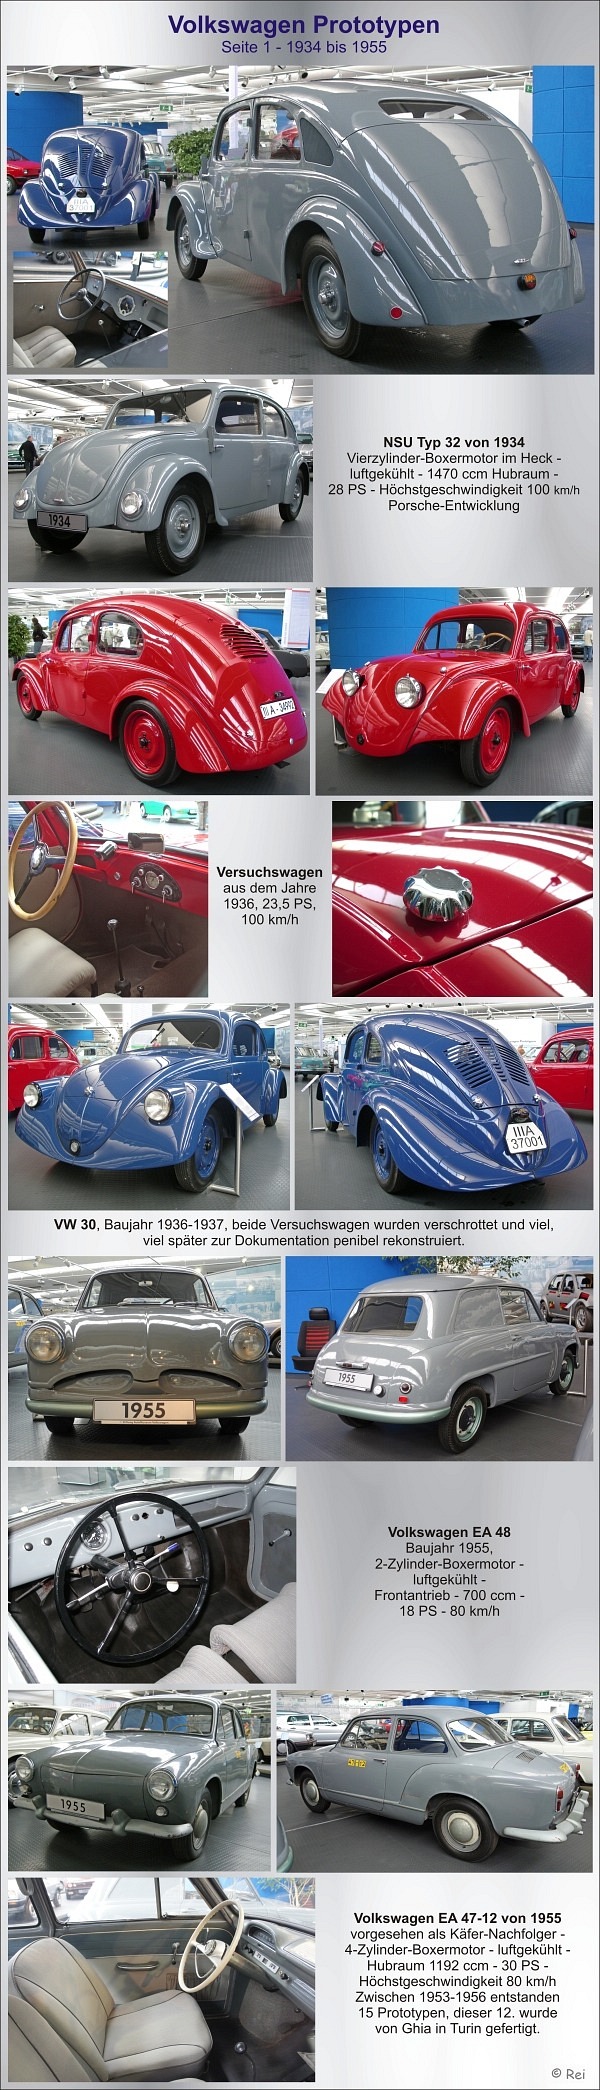 VW Prototypen - Seite 1 - 1934-1960